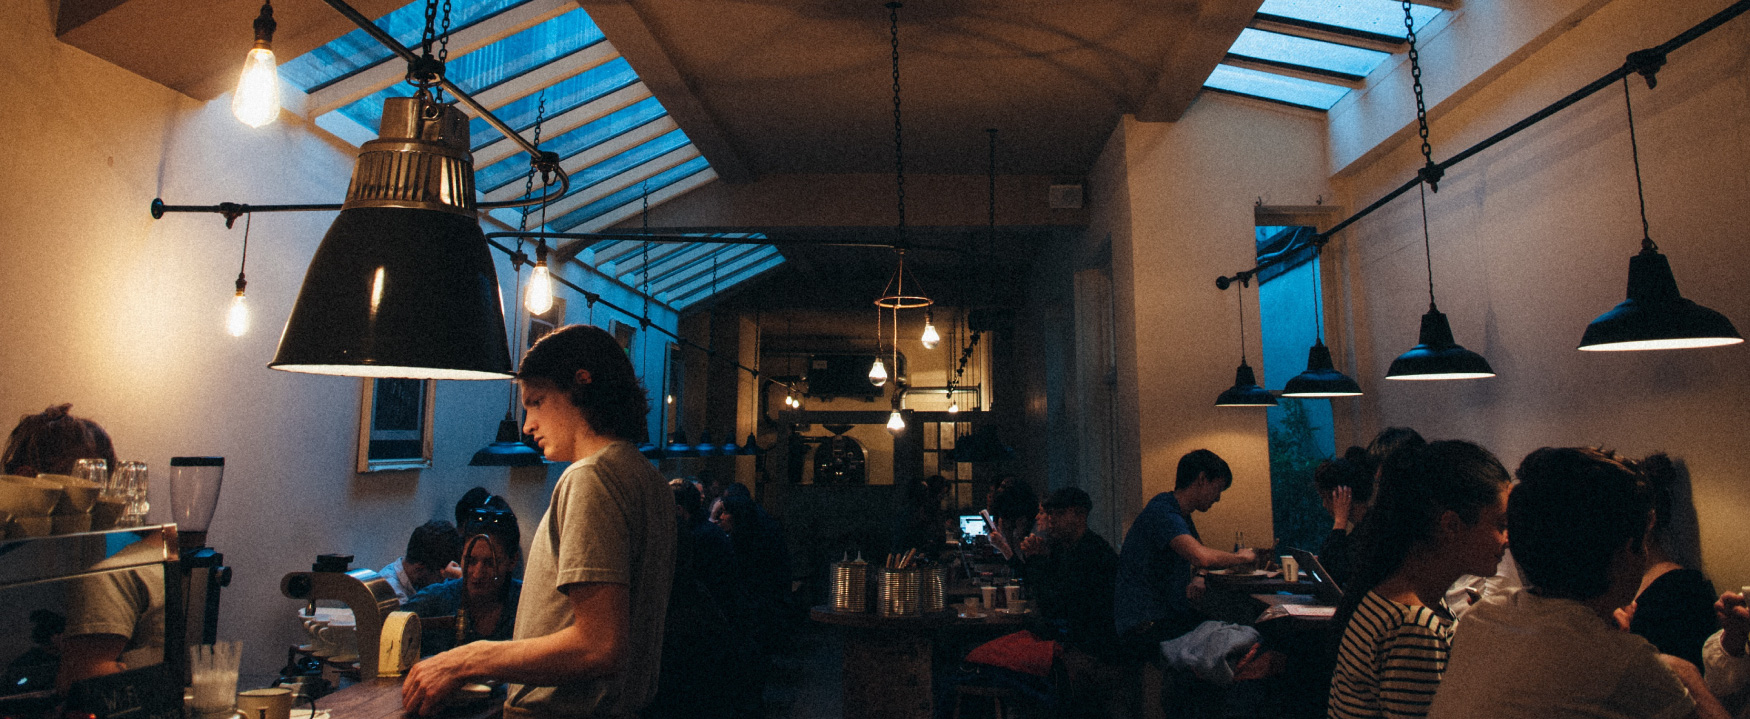 显示的是一家灯光昏暗、拥挤的咖啡店。 顾客坐在餐桌旁，工作人员在柜台照顾顾客。